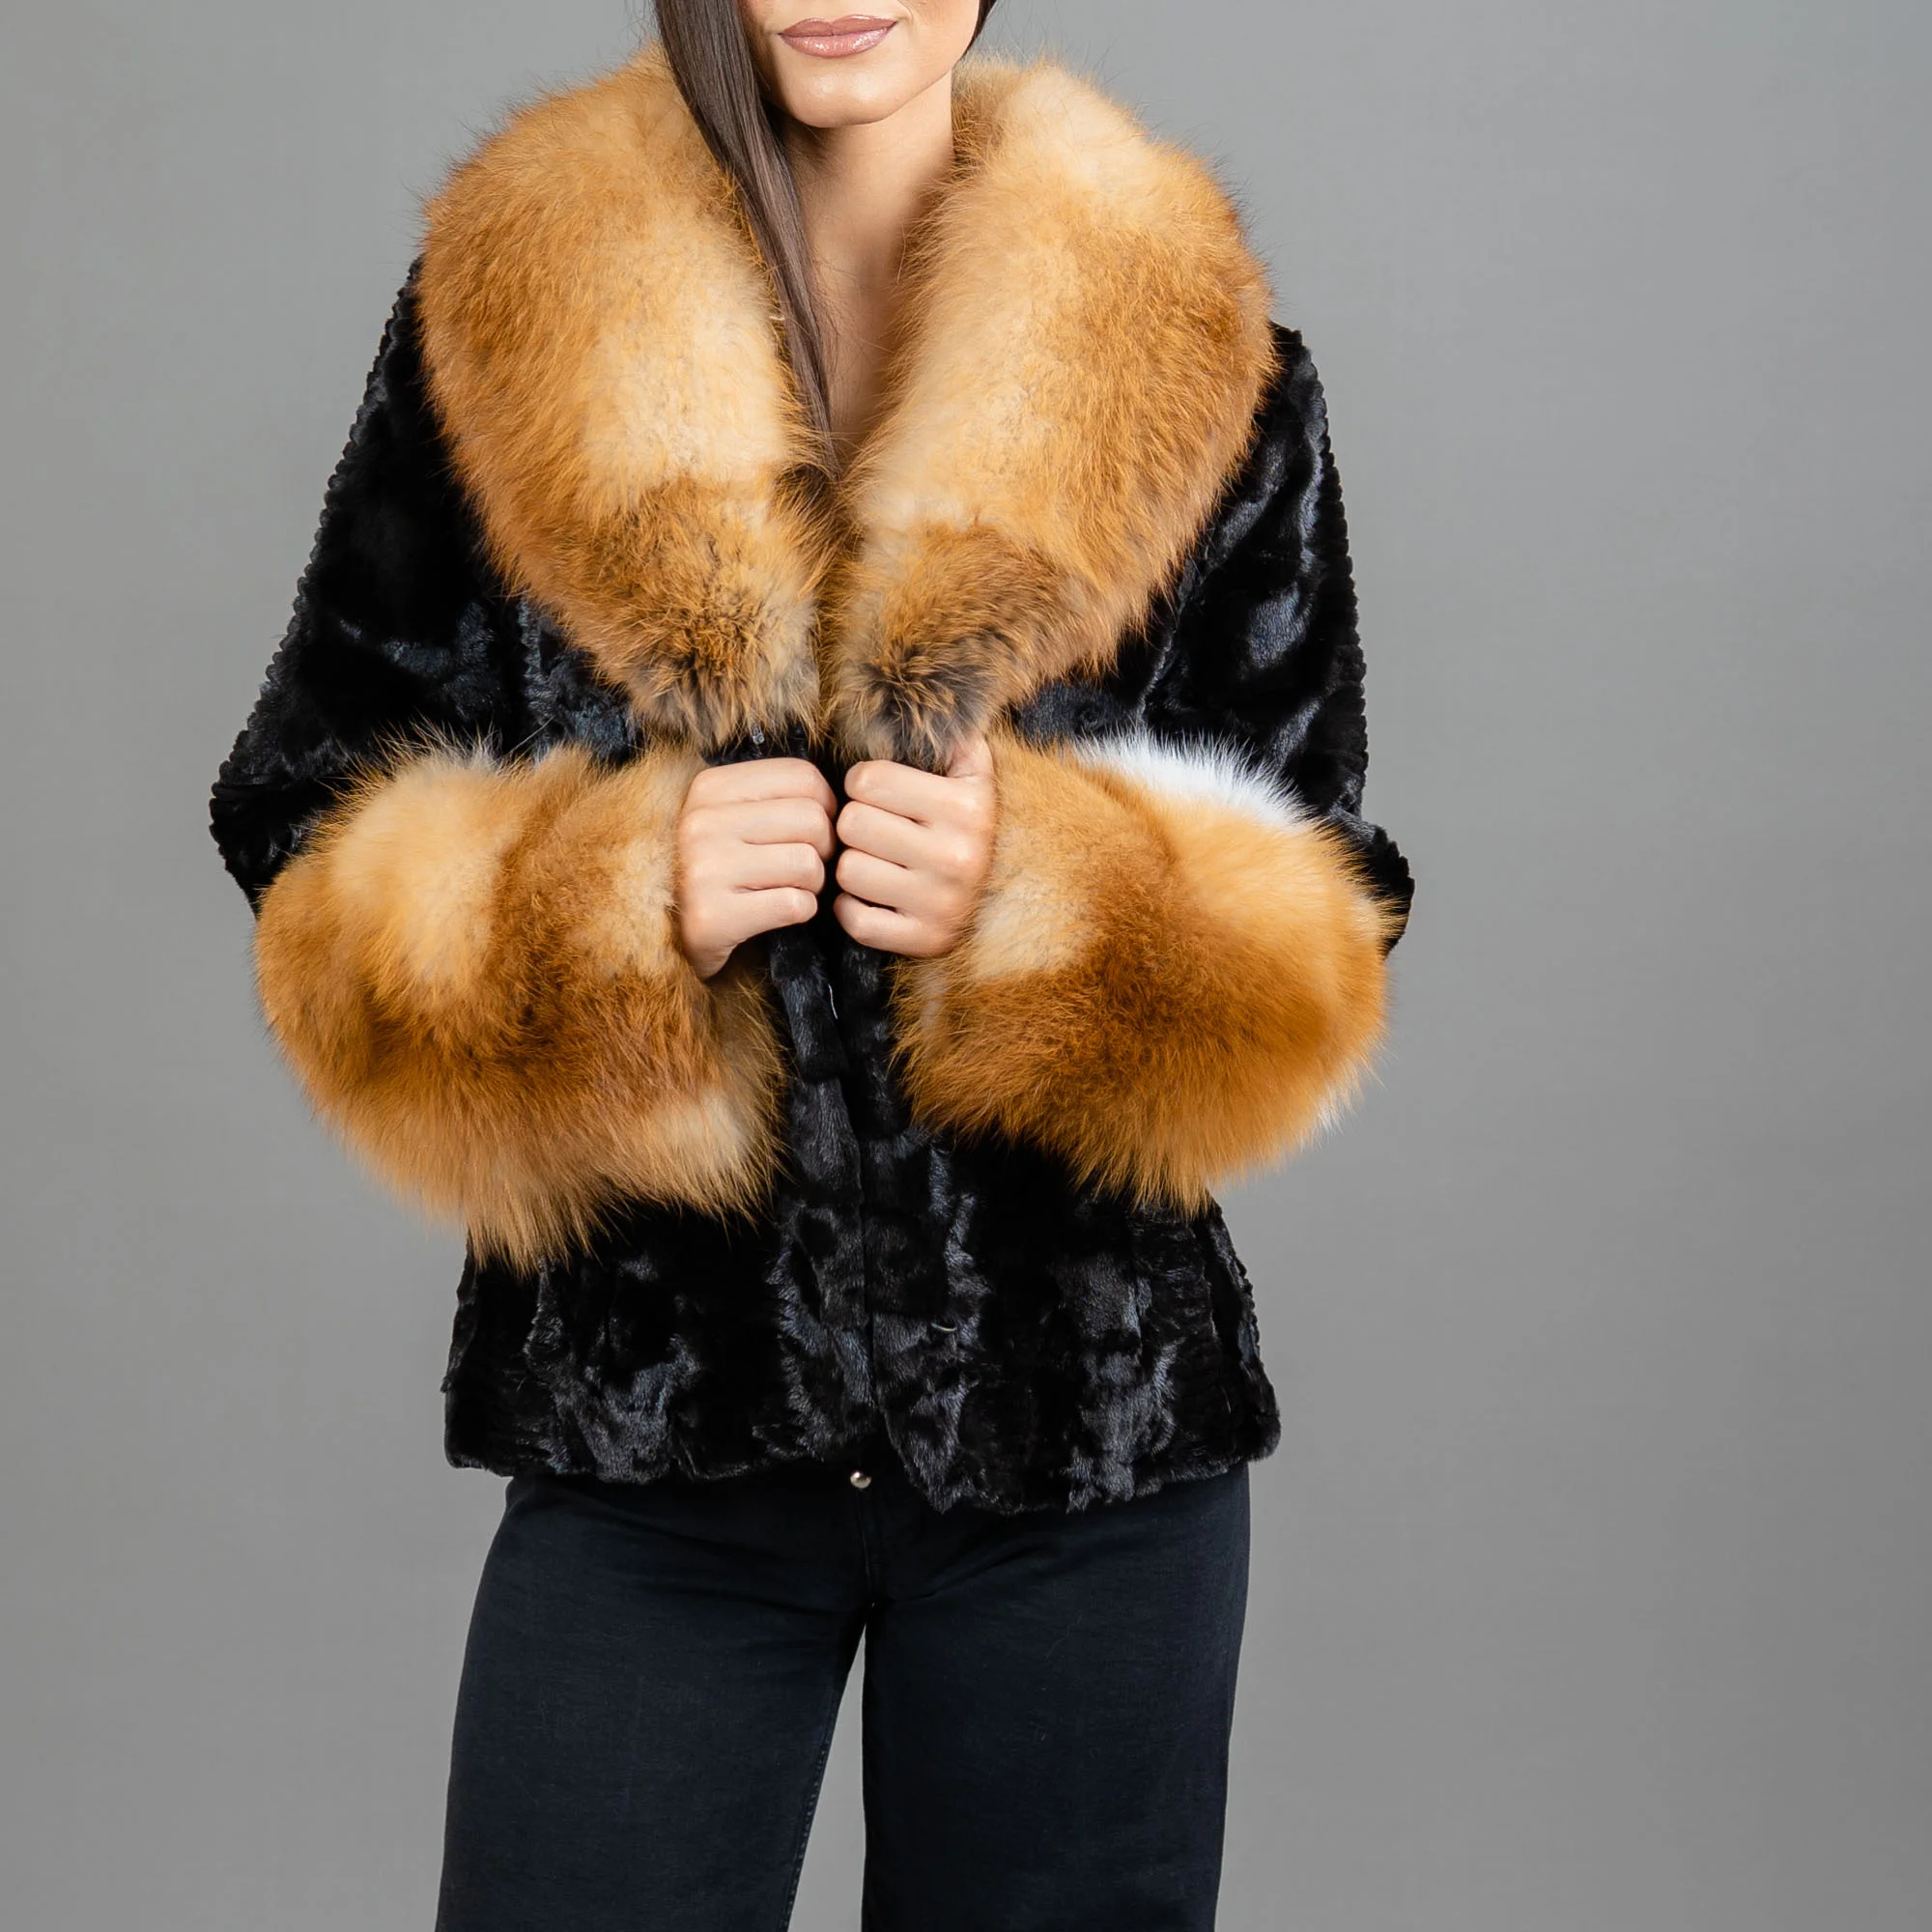 Black mink fur jacket with red fox fur details